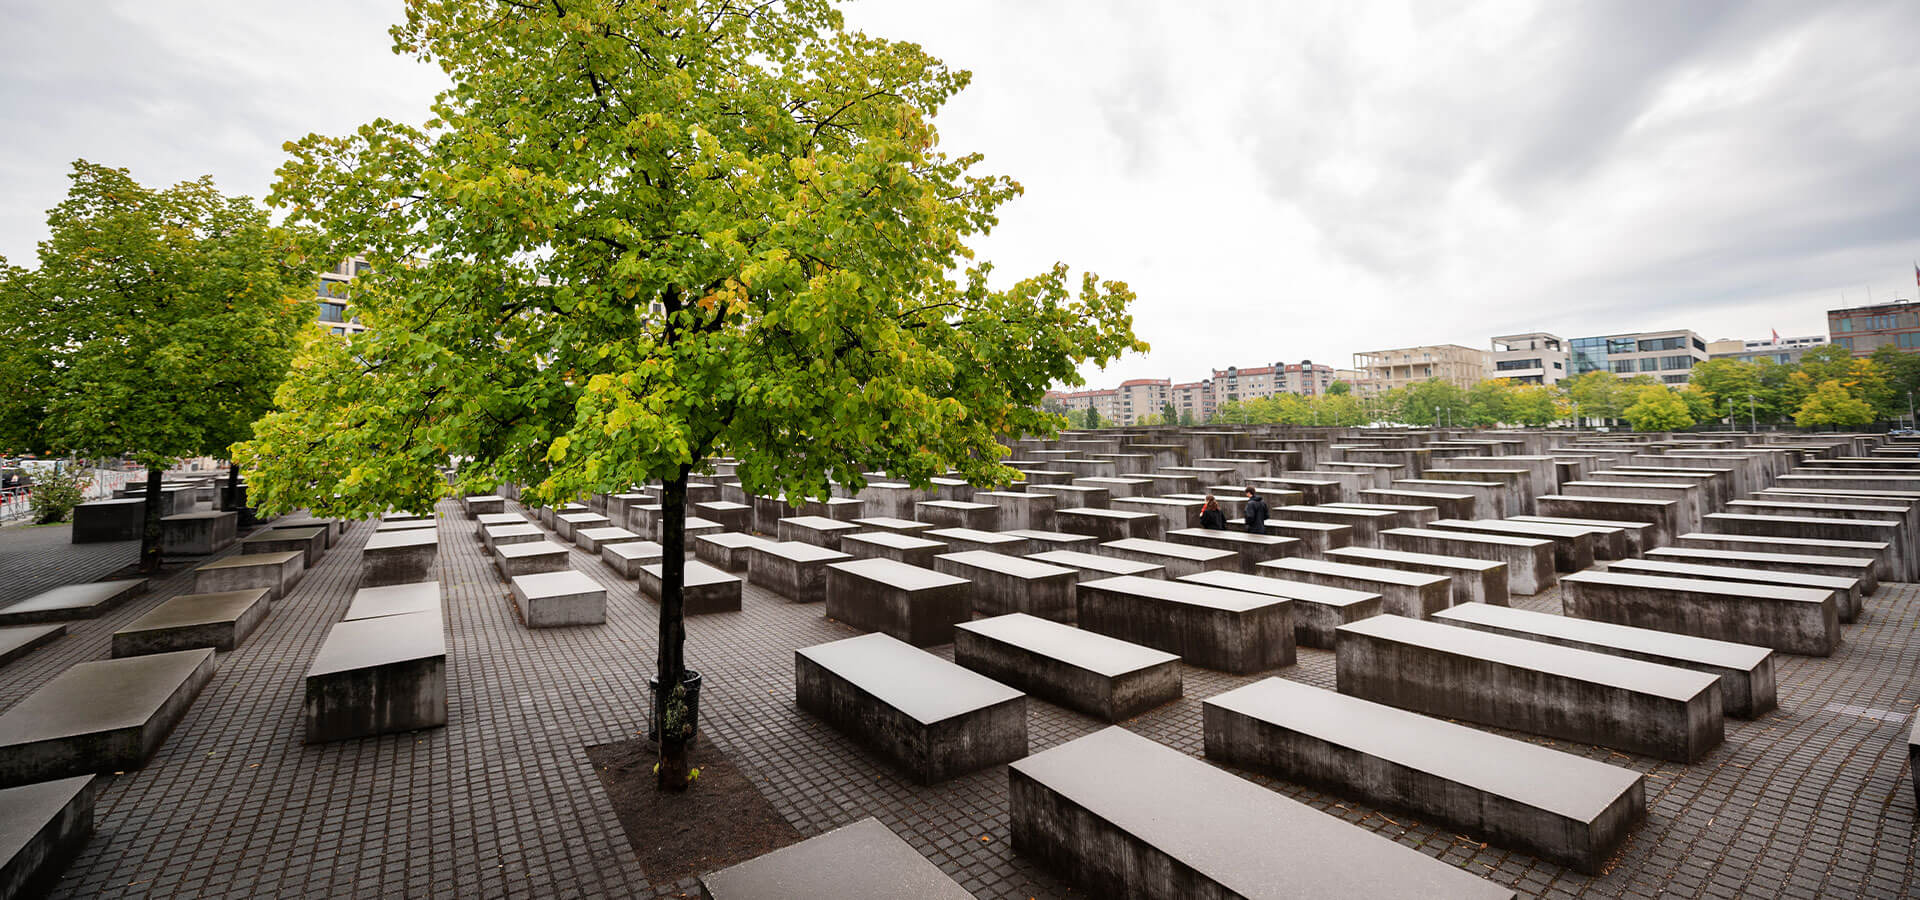 O Que Devemos Pensar Sobre o Holocausto?